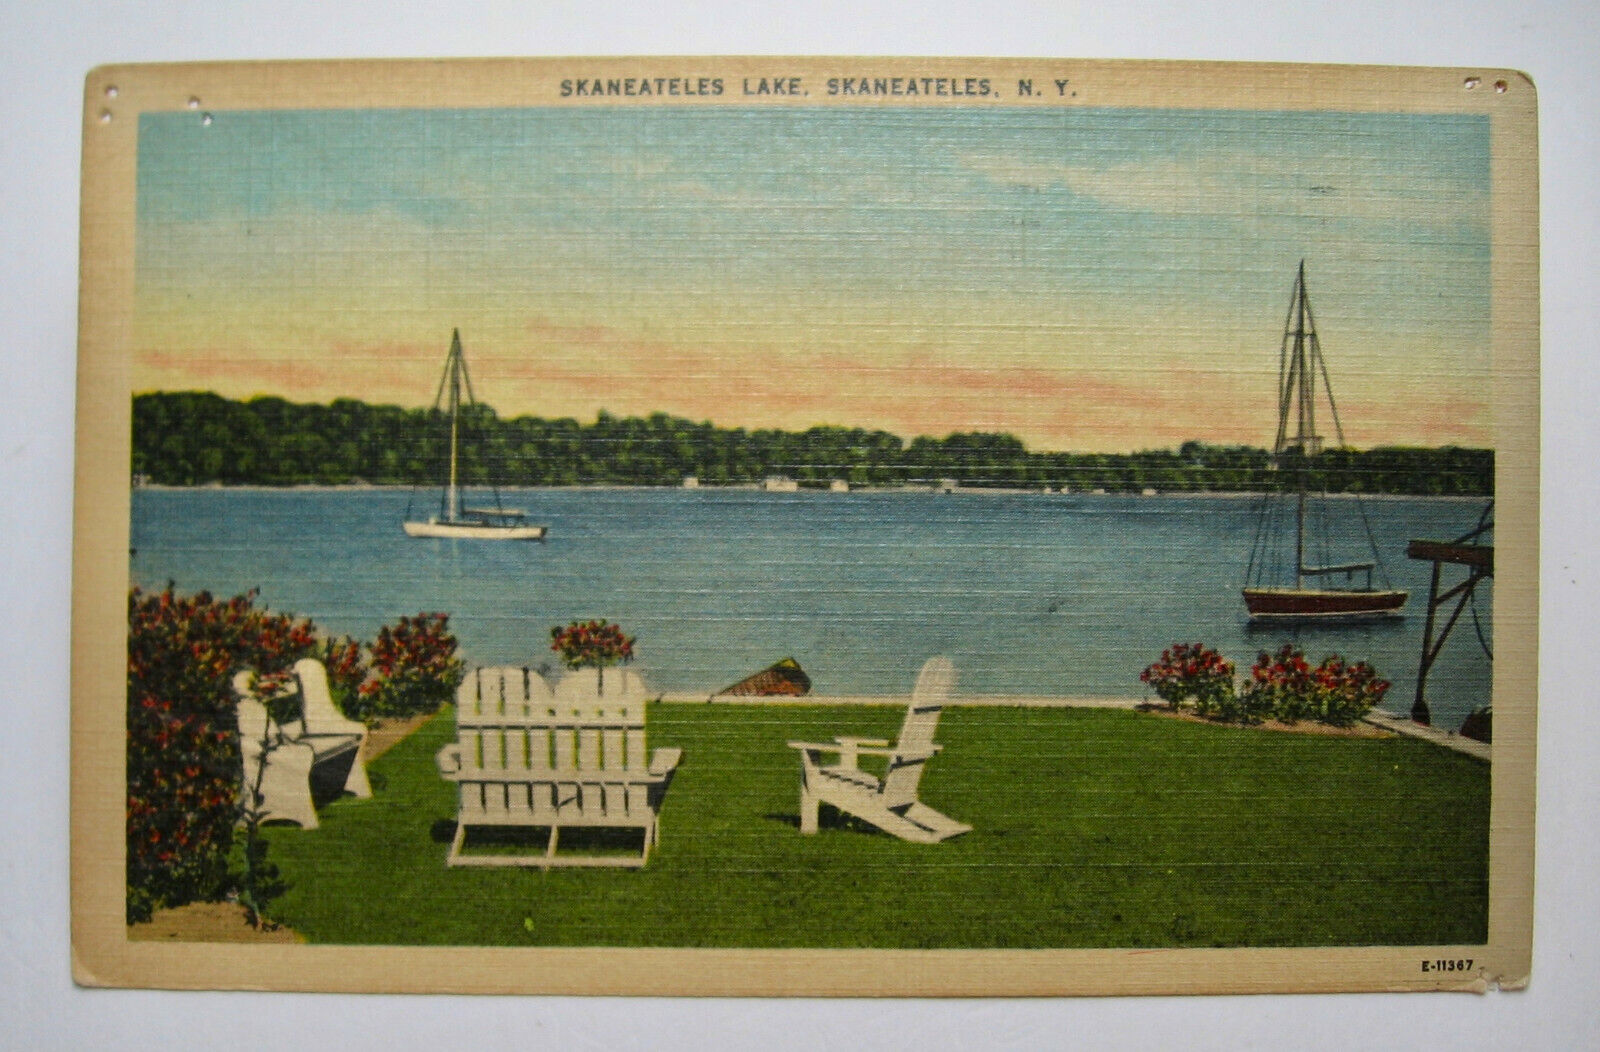 1930's era Skaneateles Lake Postcard sent in 1985